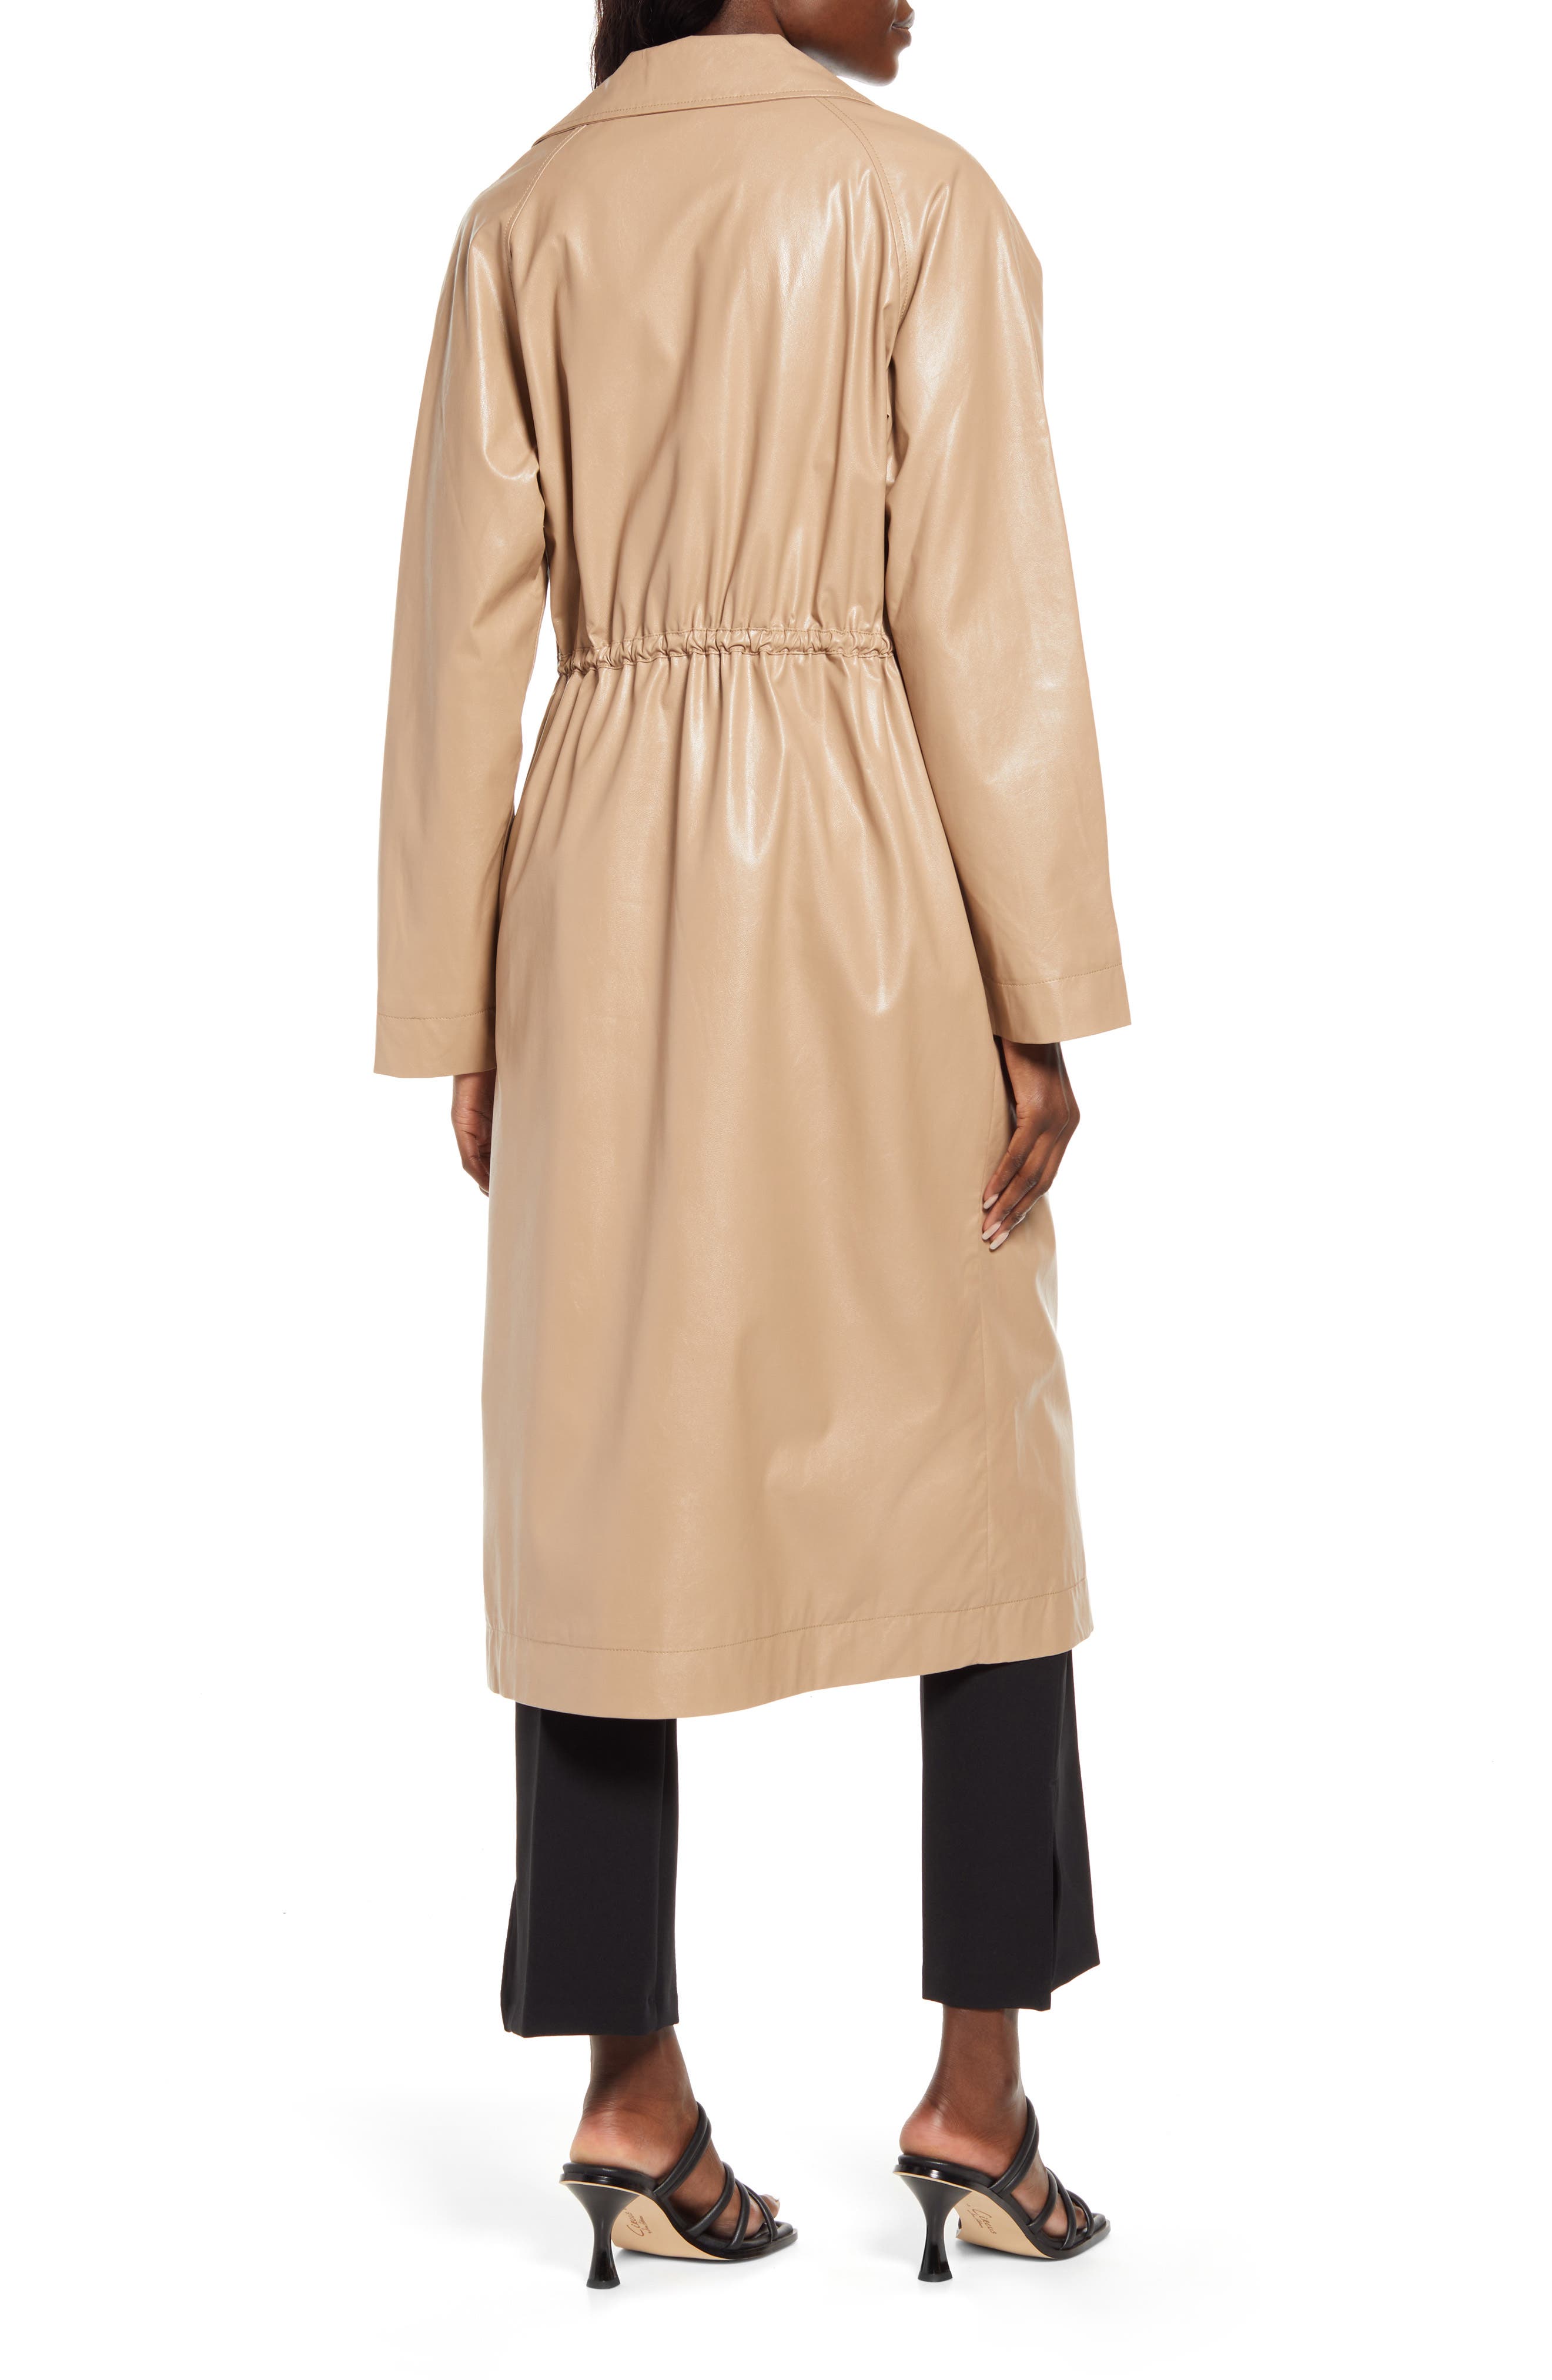 Brown M Vero Moda Trench coat WOMEN FASHION Coats Casual discount 57% 